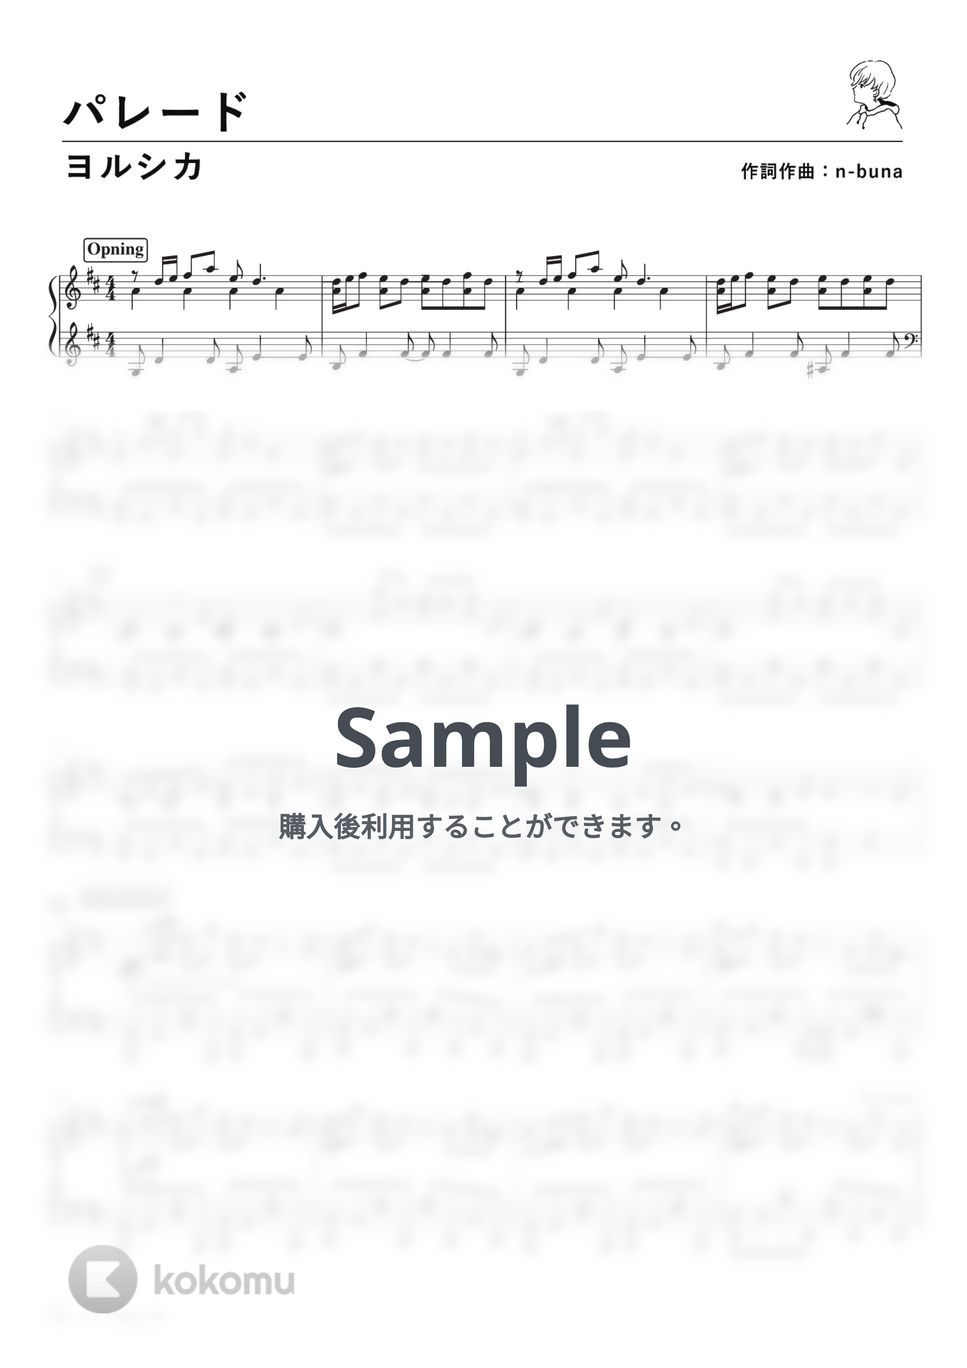 ヨルシカ - パレード (PianoSolo) by 深根 / Fukane